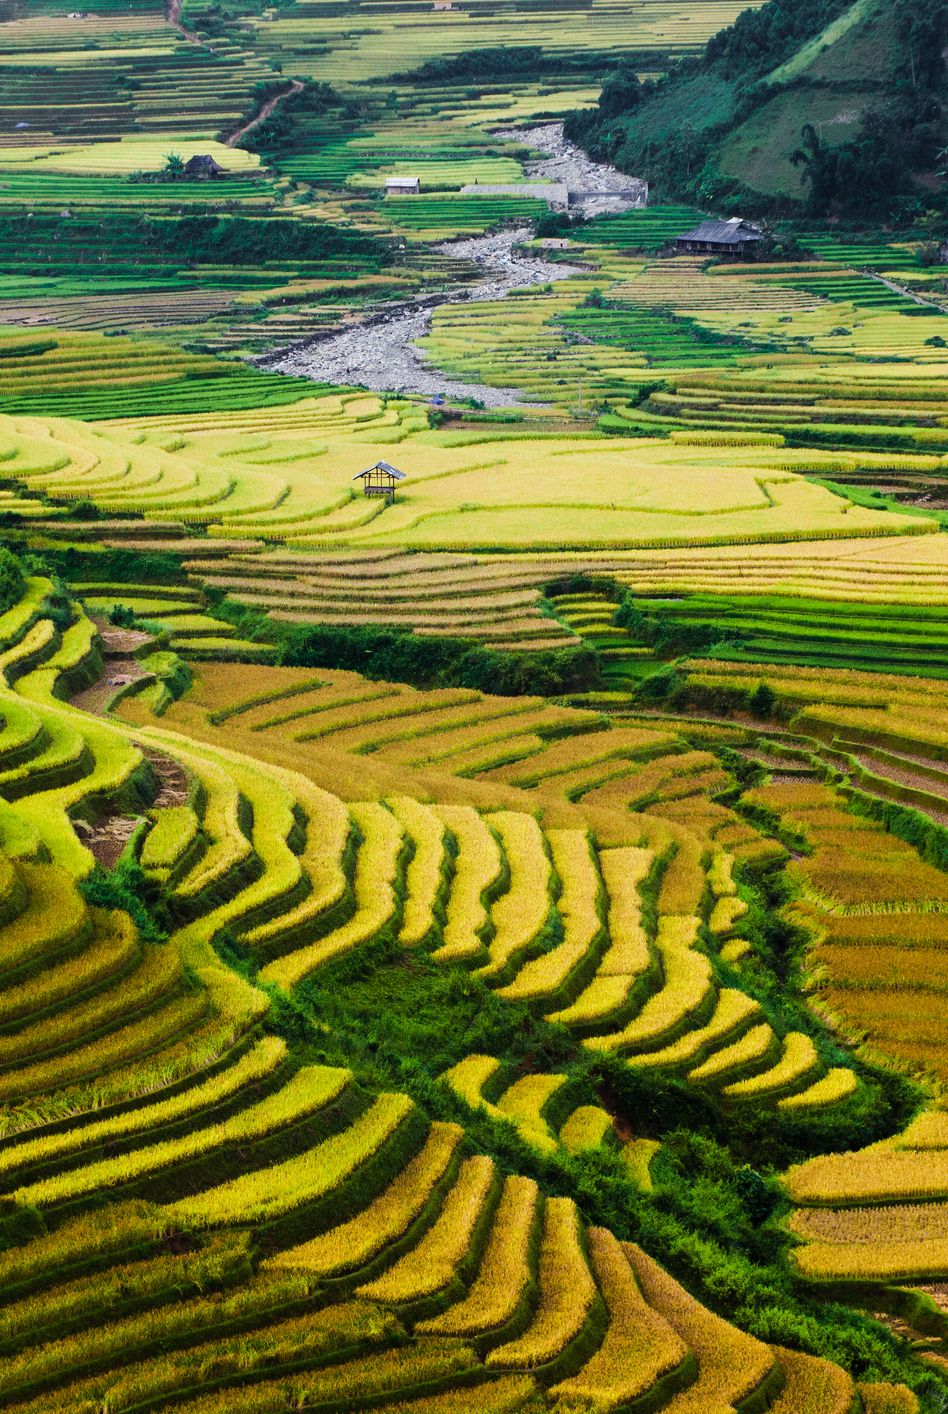 Thung lũng Tú Lệ, Việt Nam Những cánh đồng lúa chín vàng và xanh cầu vồng ở Thung lũng Tú Lệ tạo nên một vẻ đẹp mê hồn.